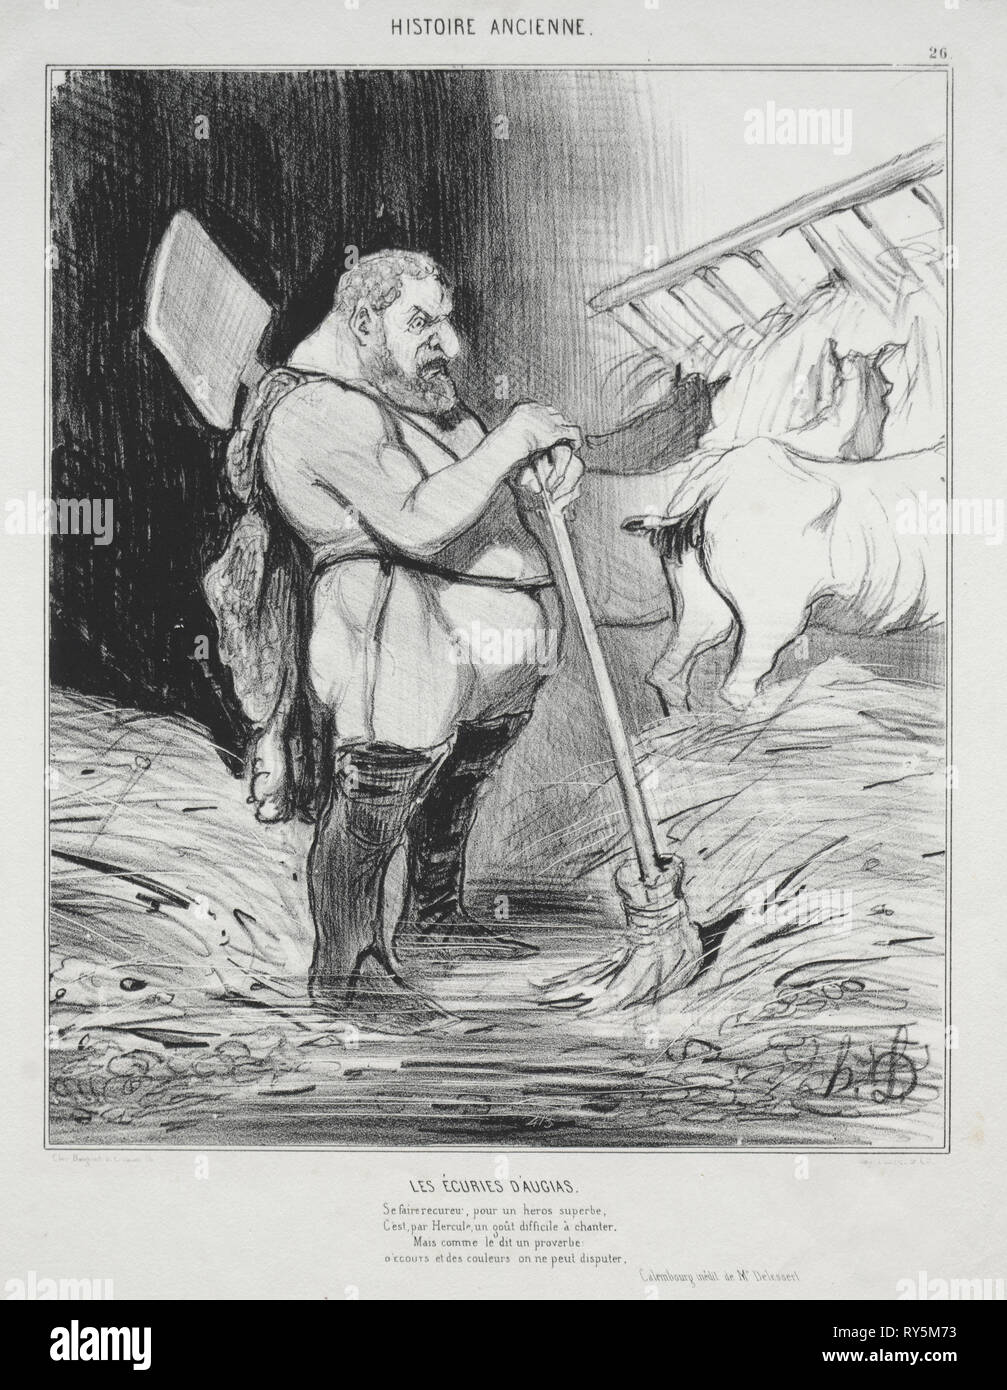 Pubblicato in le Charivari (n du 4 septembre 1842): storia antica, la piastra 26: la stalla di Augeas, 25 settembre 1842. Honoré Daumier (Francese, 1808-1879), Aubert. Litografia; foglio: 34,7 x 26 cm (13 11/16 x 10 1/4 in.); immagine: 24,7 x 20,6 cm (9 3/4 x 8 1/8 in Foto Stock